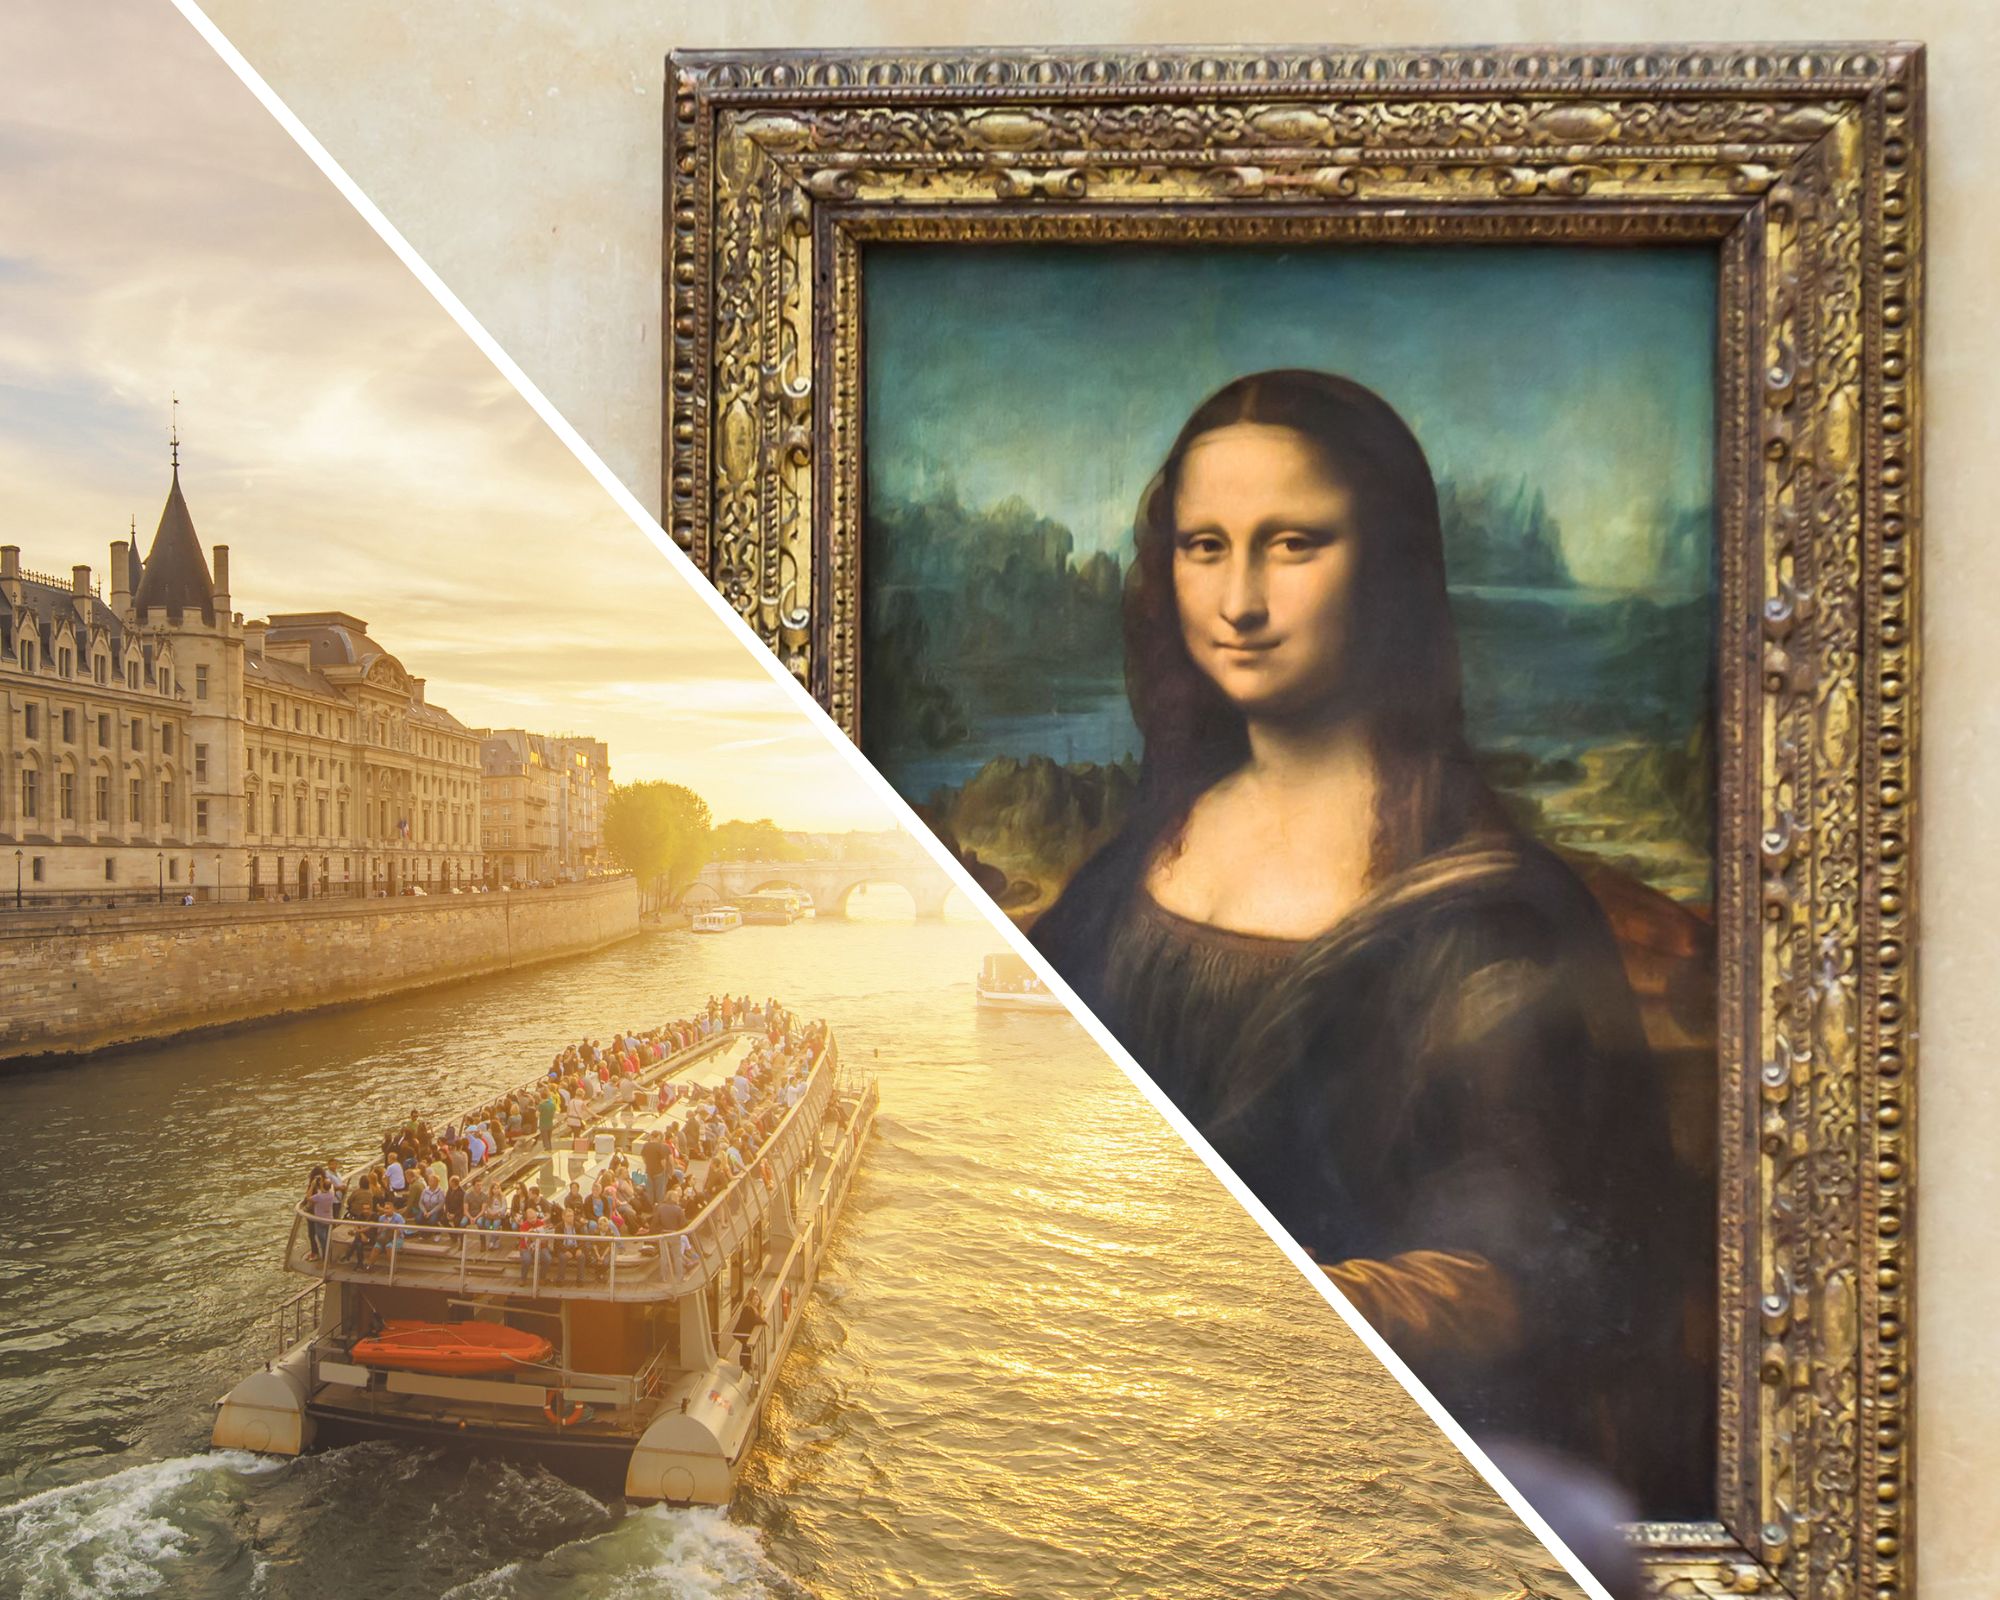 Visita ao museu do Louvre e bilhete de cruzeiro no rio Sena, retirada da agência (com acesso prioritário)